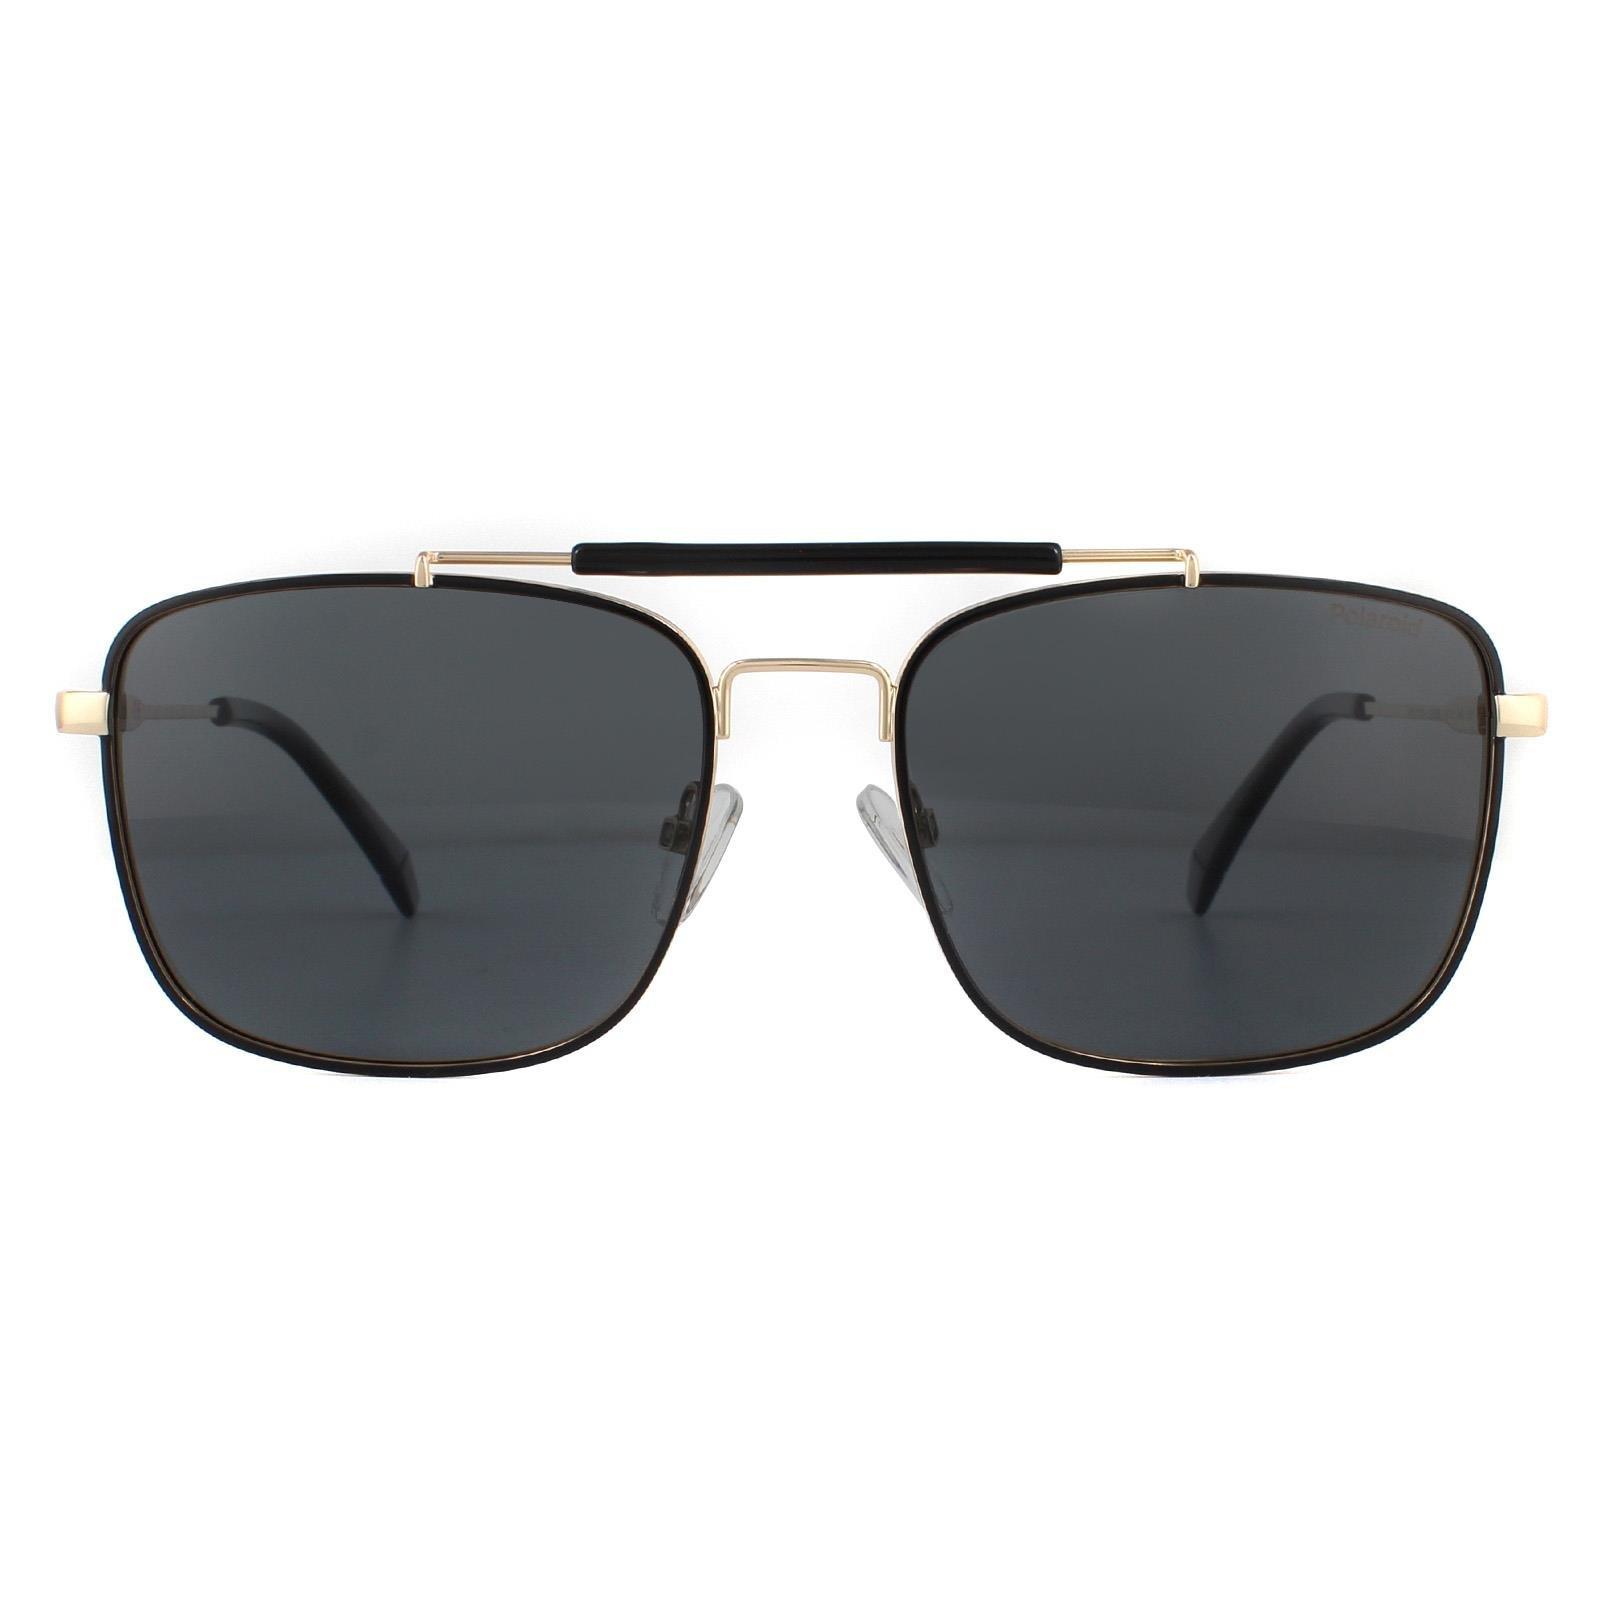 Поляризованные солнцезащитные очки Aviator Black Gold Grey Polaroid, золото polaroid ancillaries pld 9017 s lhf m9